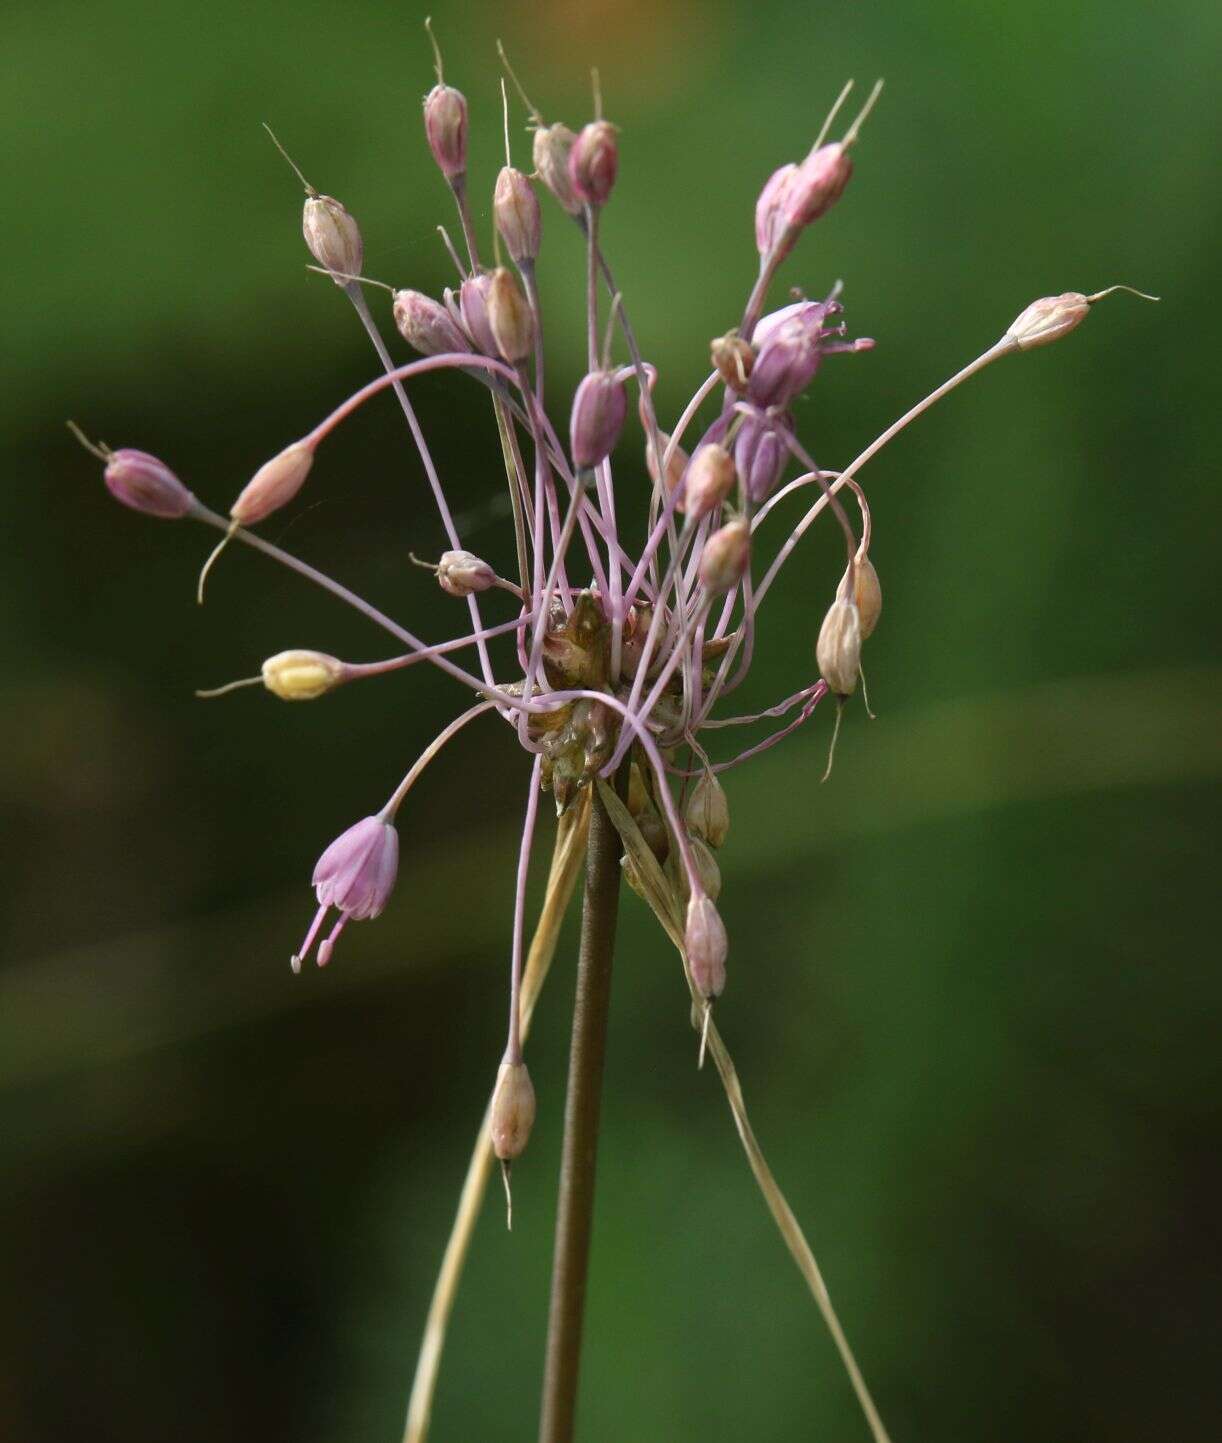 Image of Allium carinatum subsp. carinatum